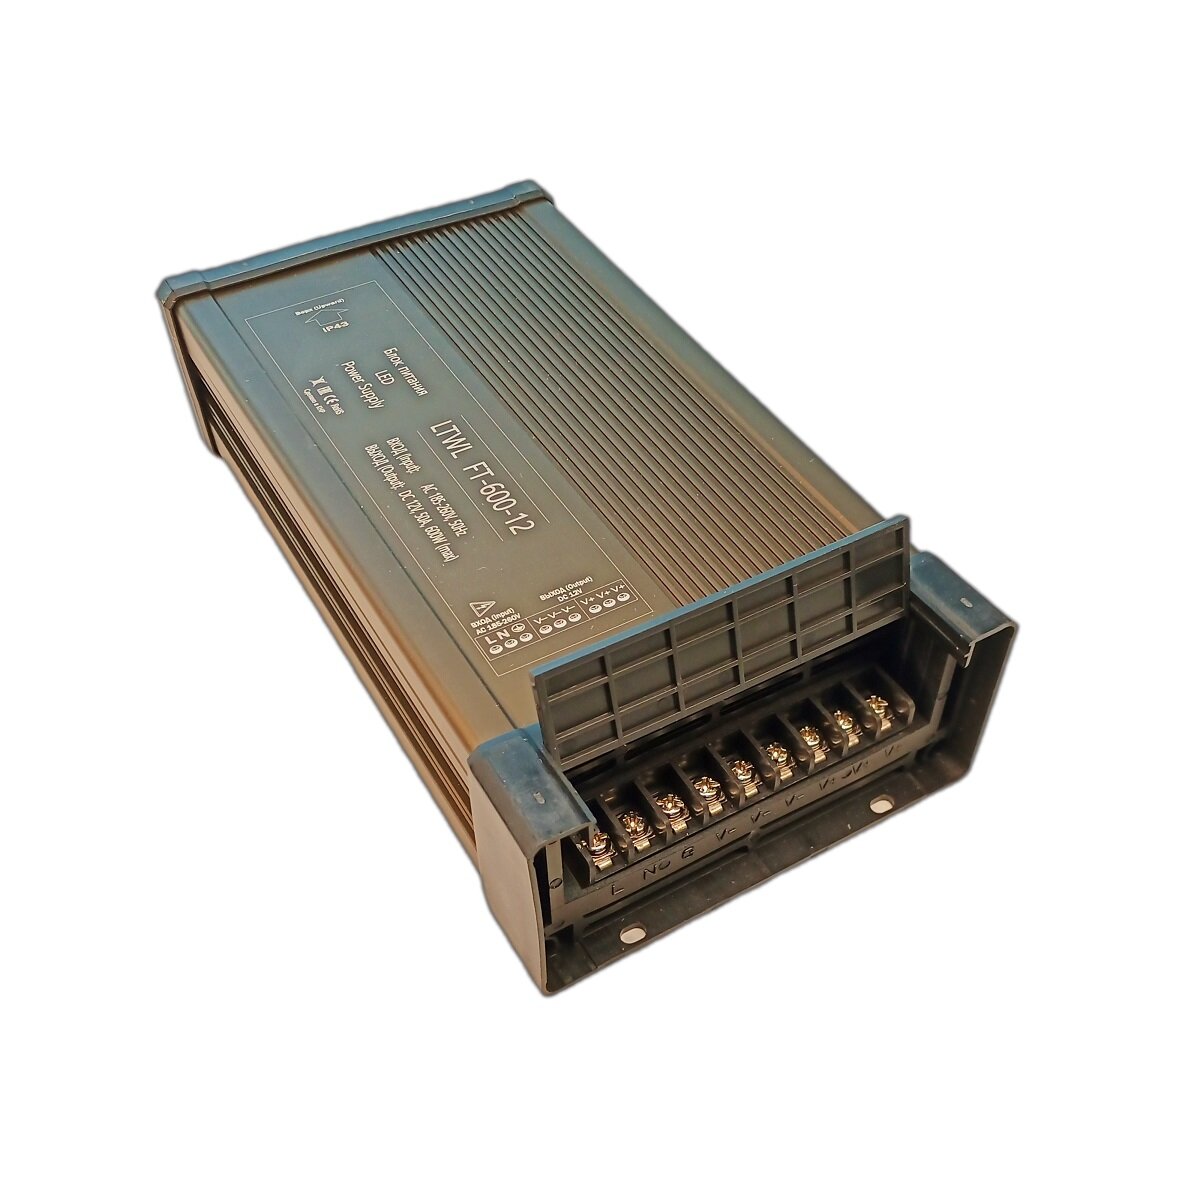 Мощный блок питания для светодиодной ленты 12В - 600 Вт - Litewell FT-600-12. Подходит для слаботочных систем видеонаблюдения и охраны 12V.